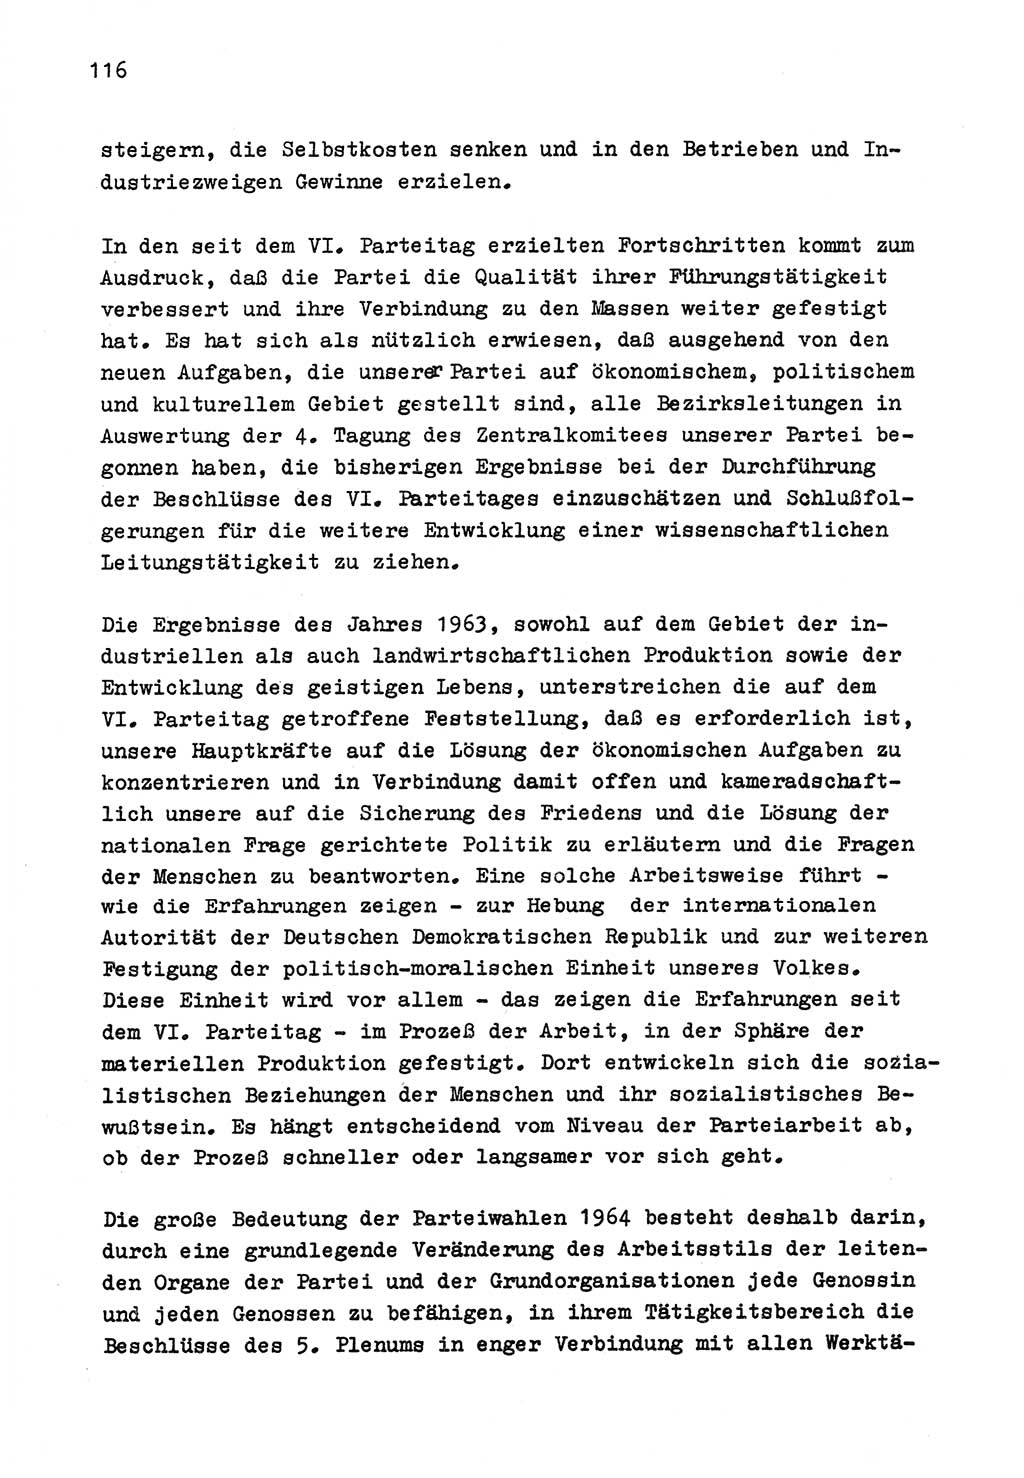 Zu Fragen der Parteiarbeit [Sozialistische Einheitspartei Deutschlands (SED) Deutsche Demokratische Republik (DDR)] 1979, Seite 116 (Fr. PA SED DDR 1979, S. 116)